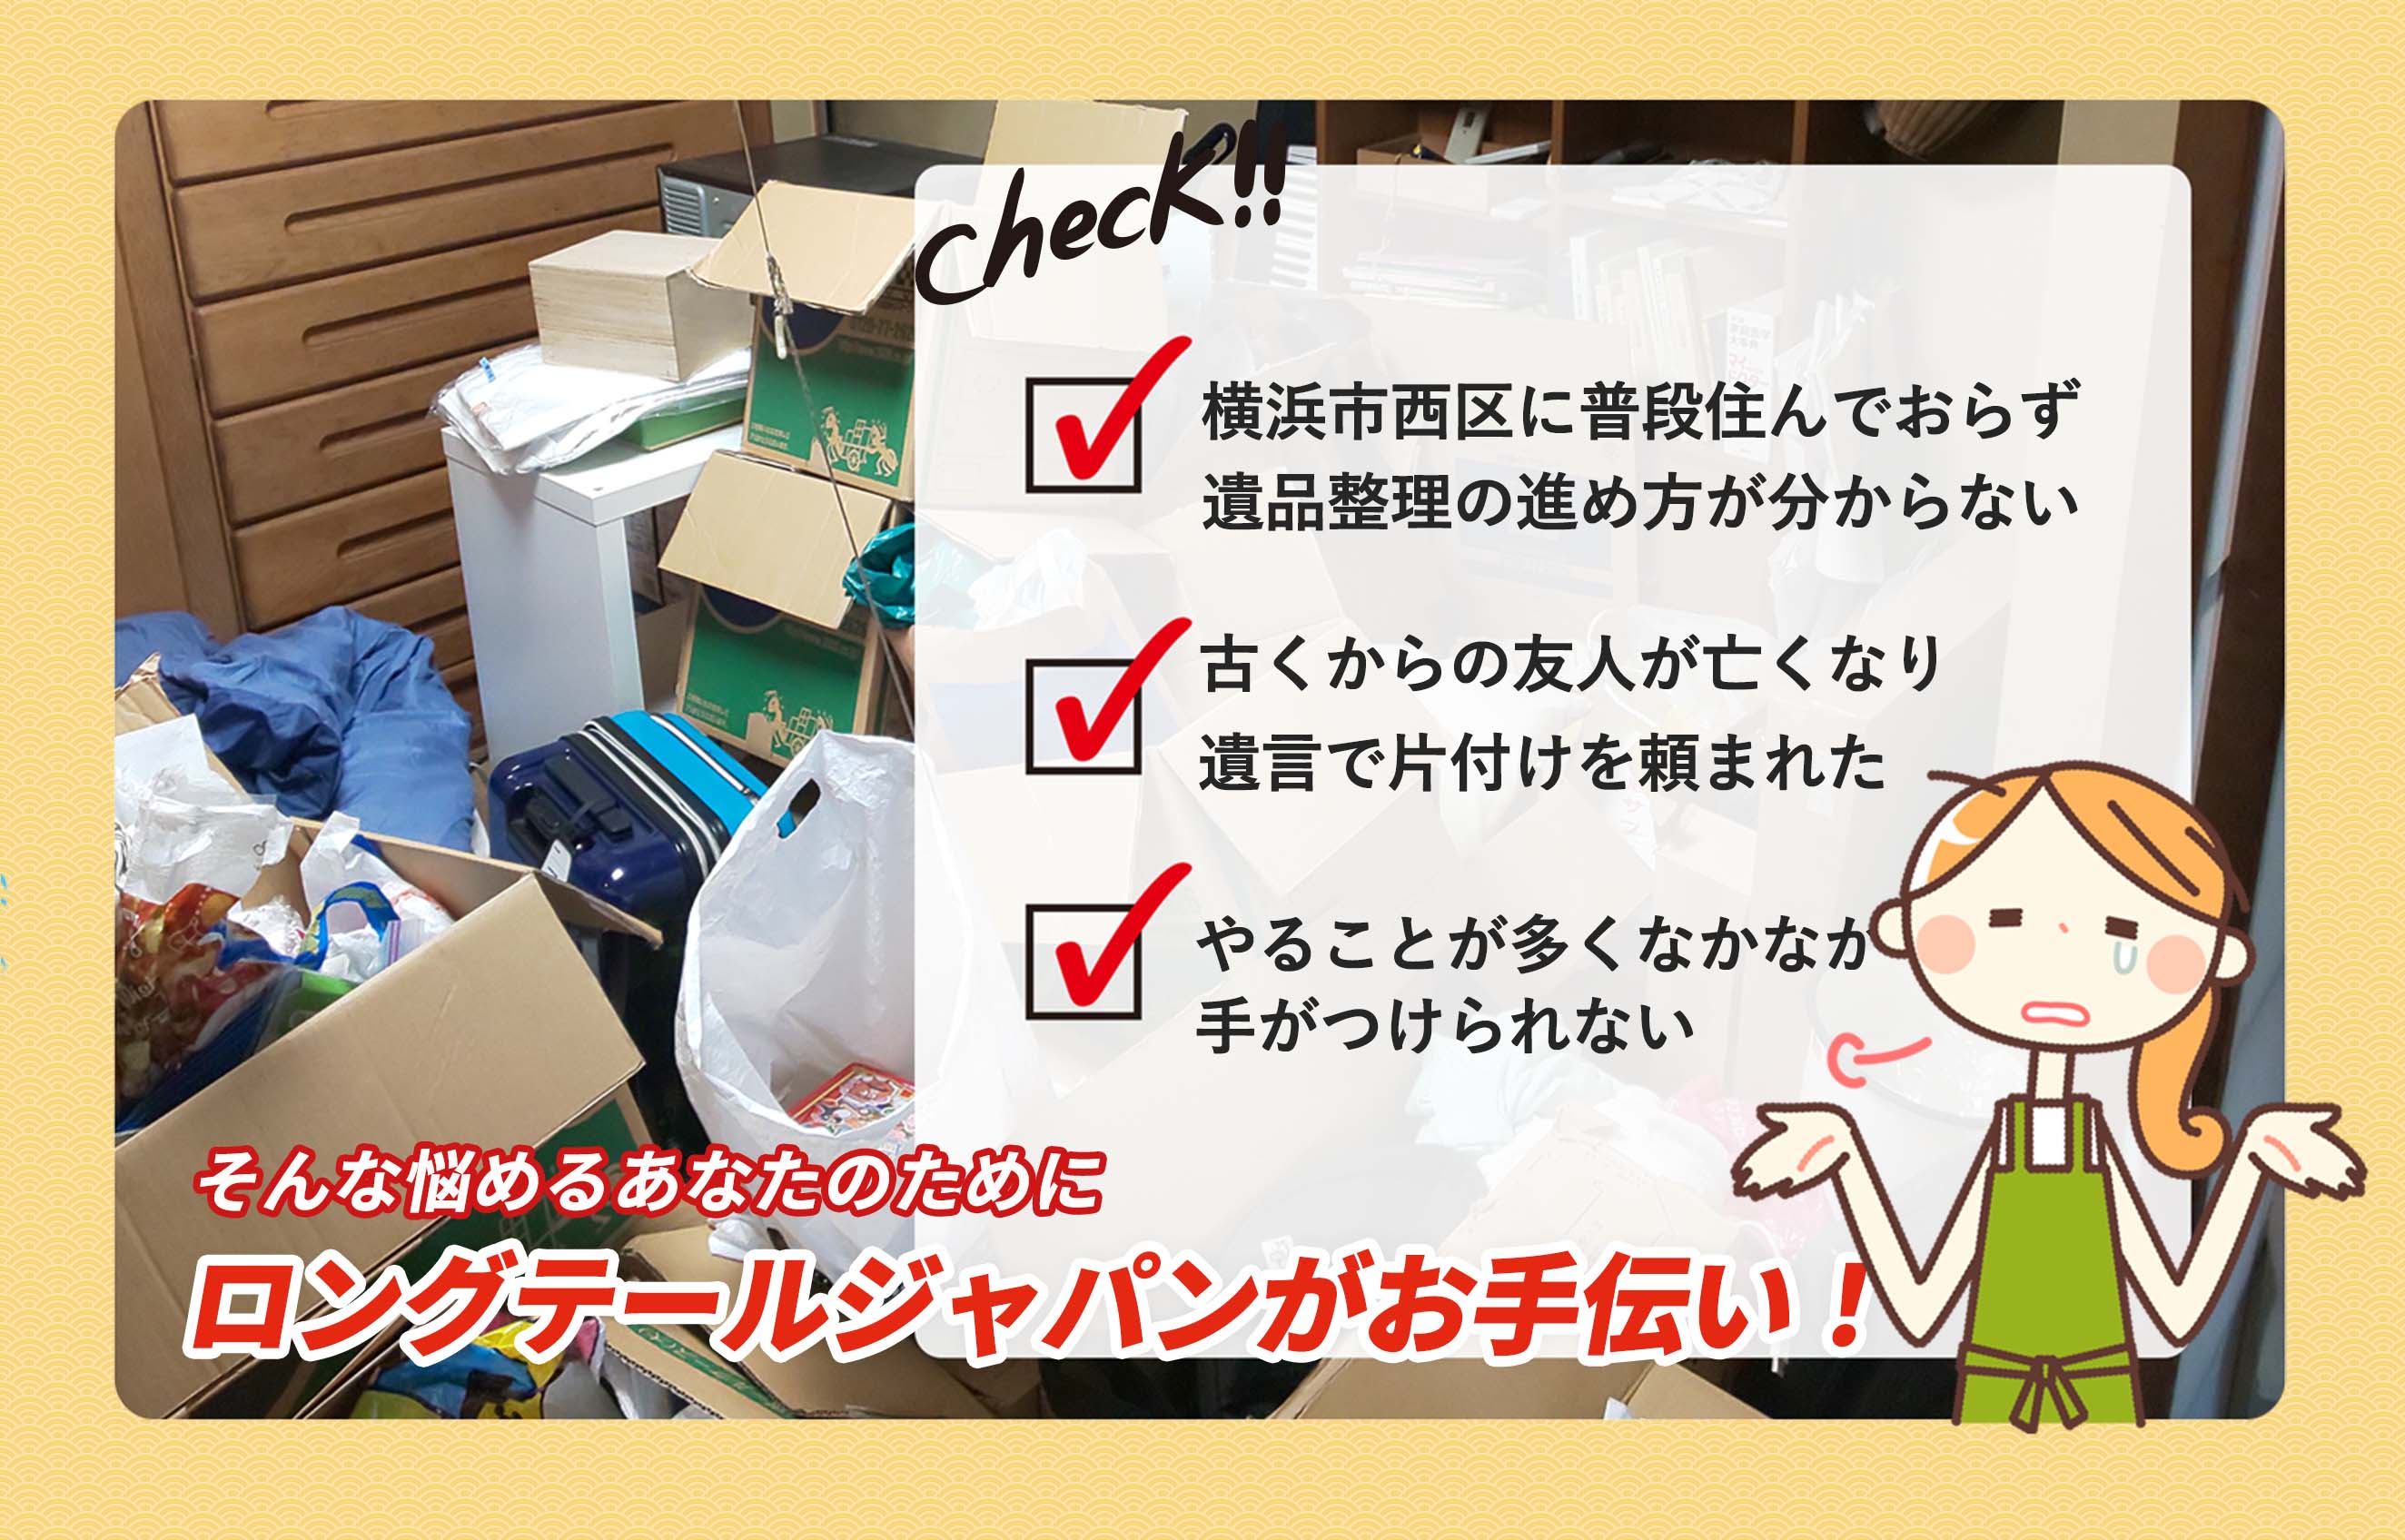 横浜市西区遺品の整理や処分にお困りでしたらＬＴＪ遺品整理隊にお任せください。